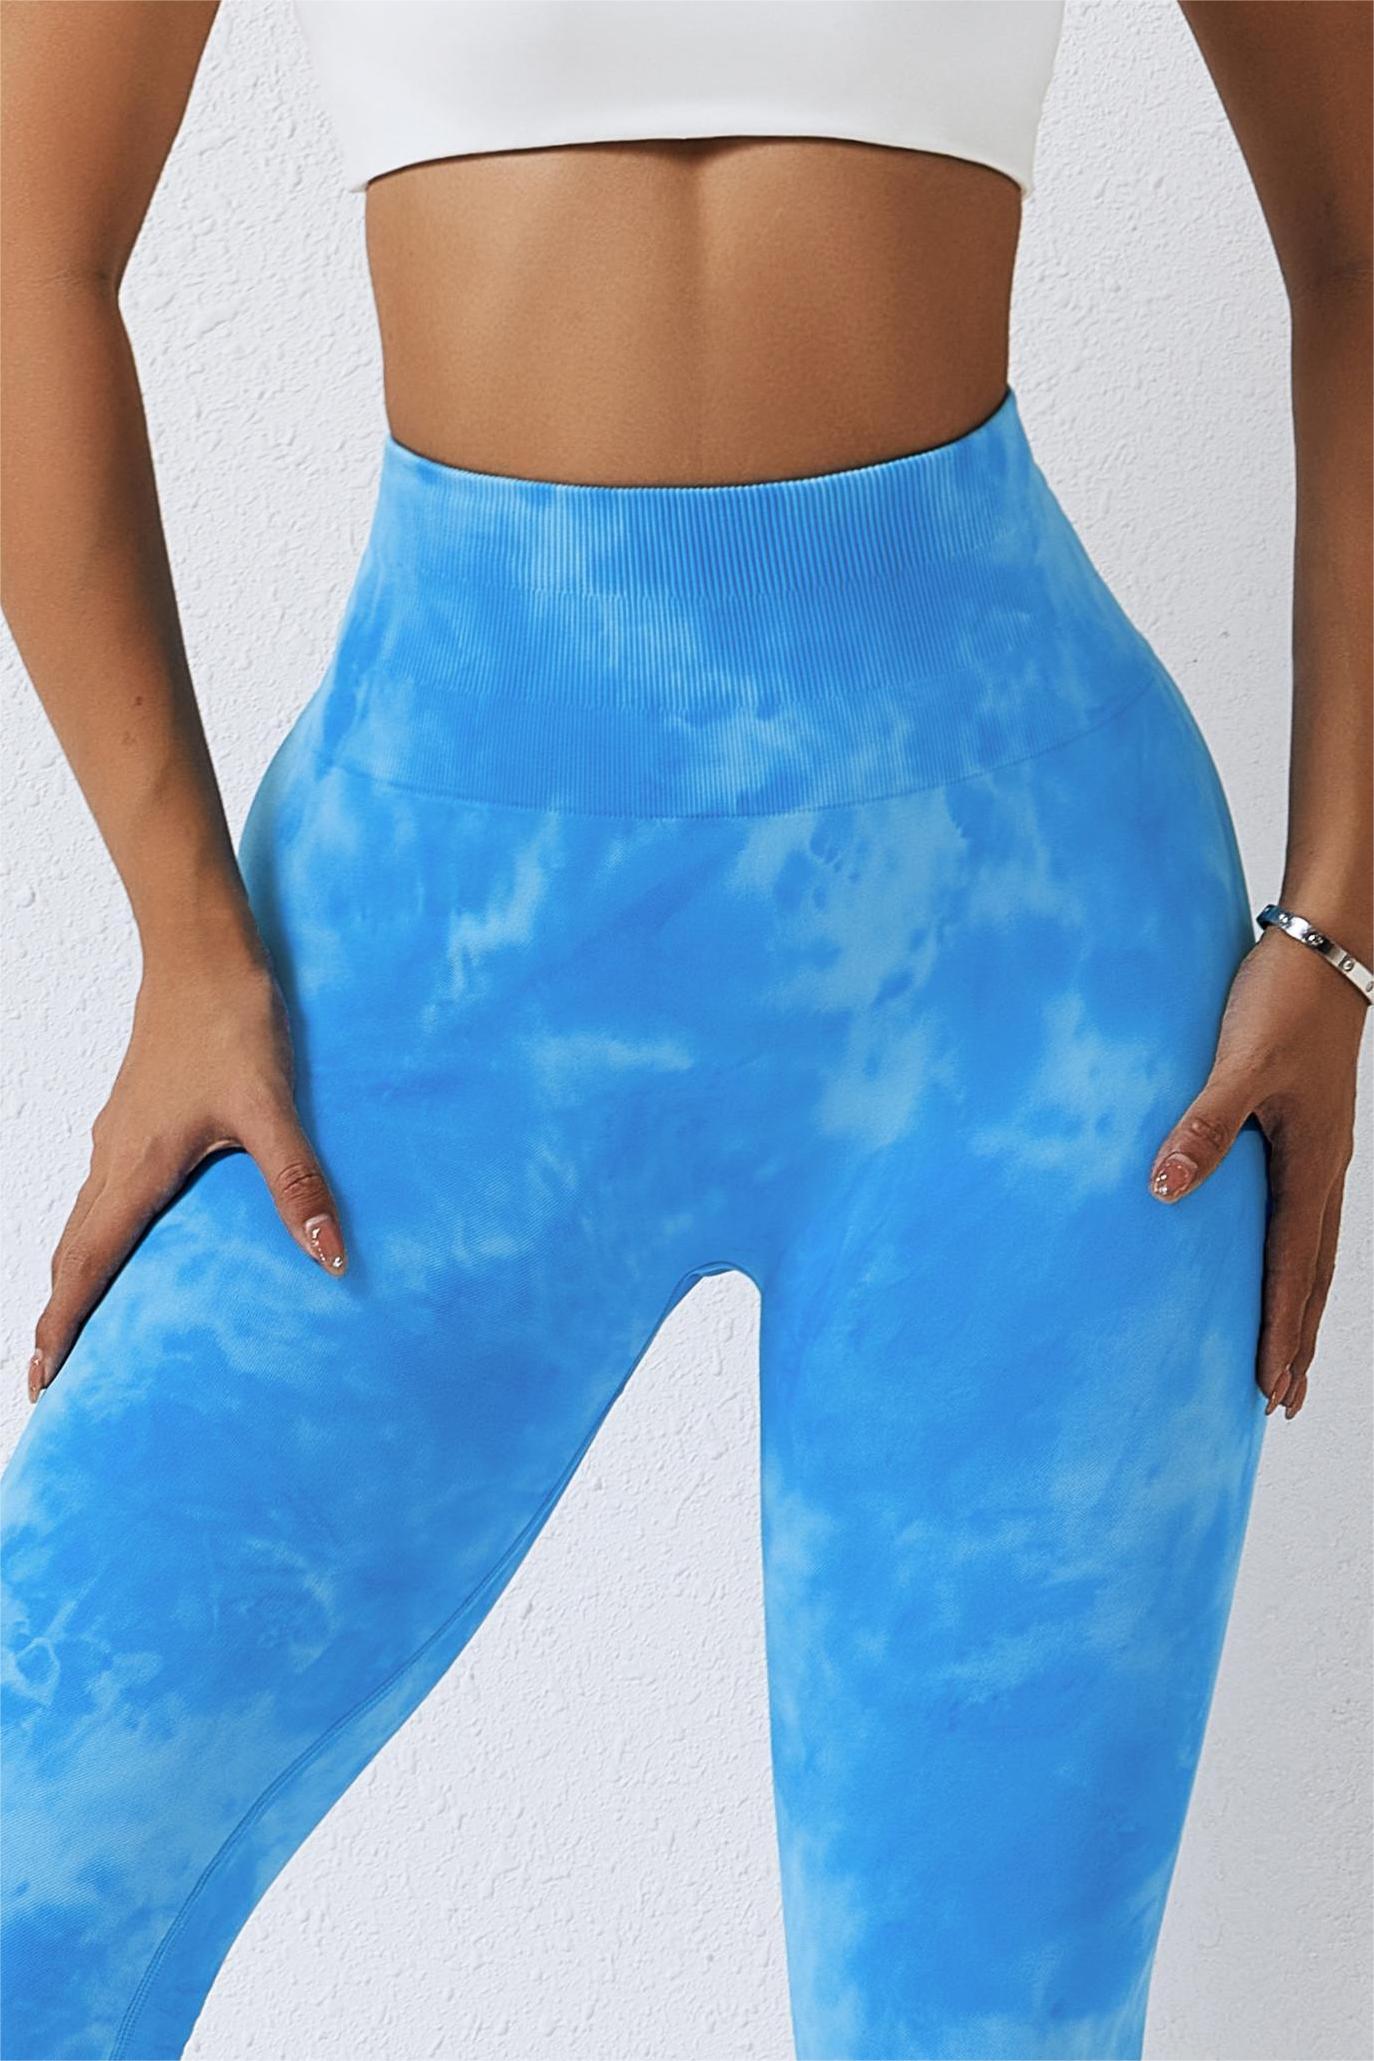 Bombshell sportswear Tie Dye seamless leggings in Caribbean Blue size large/ xl - $60 - From Nolan